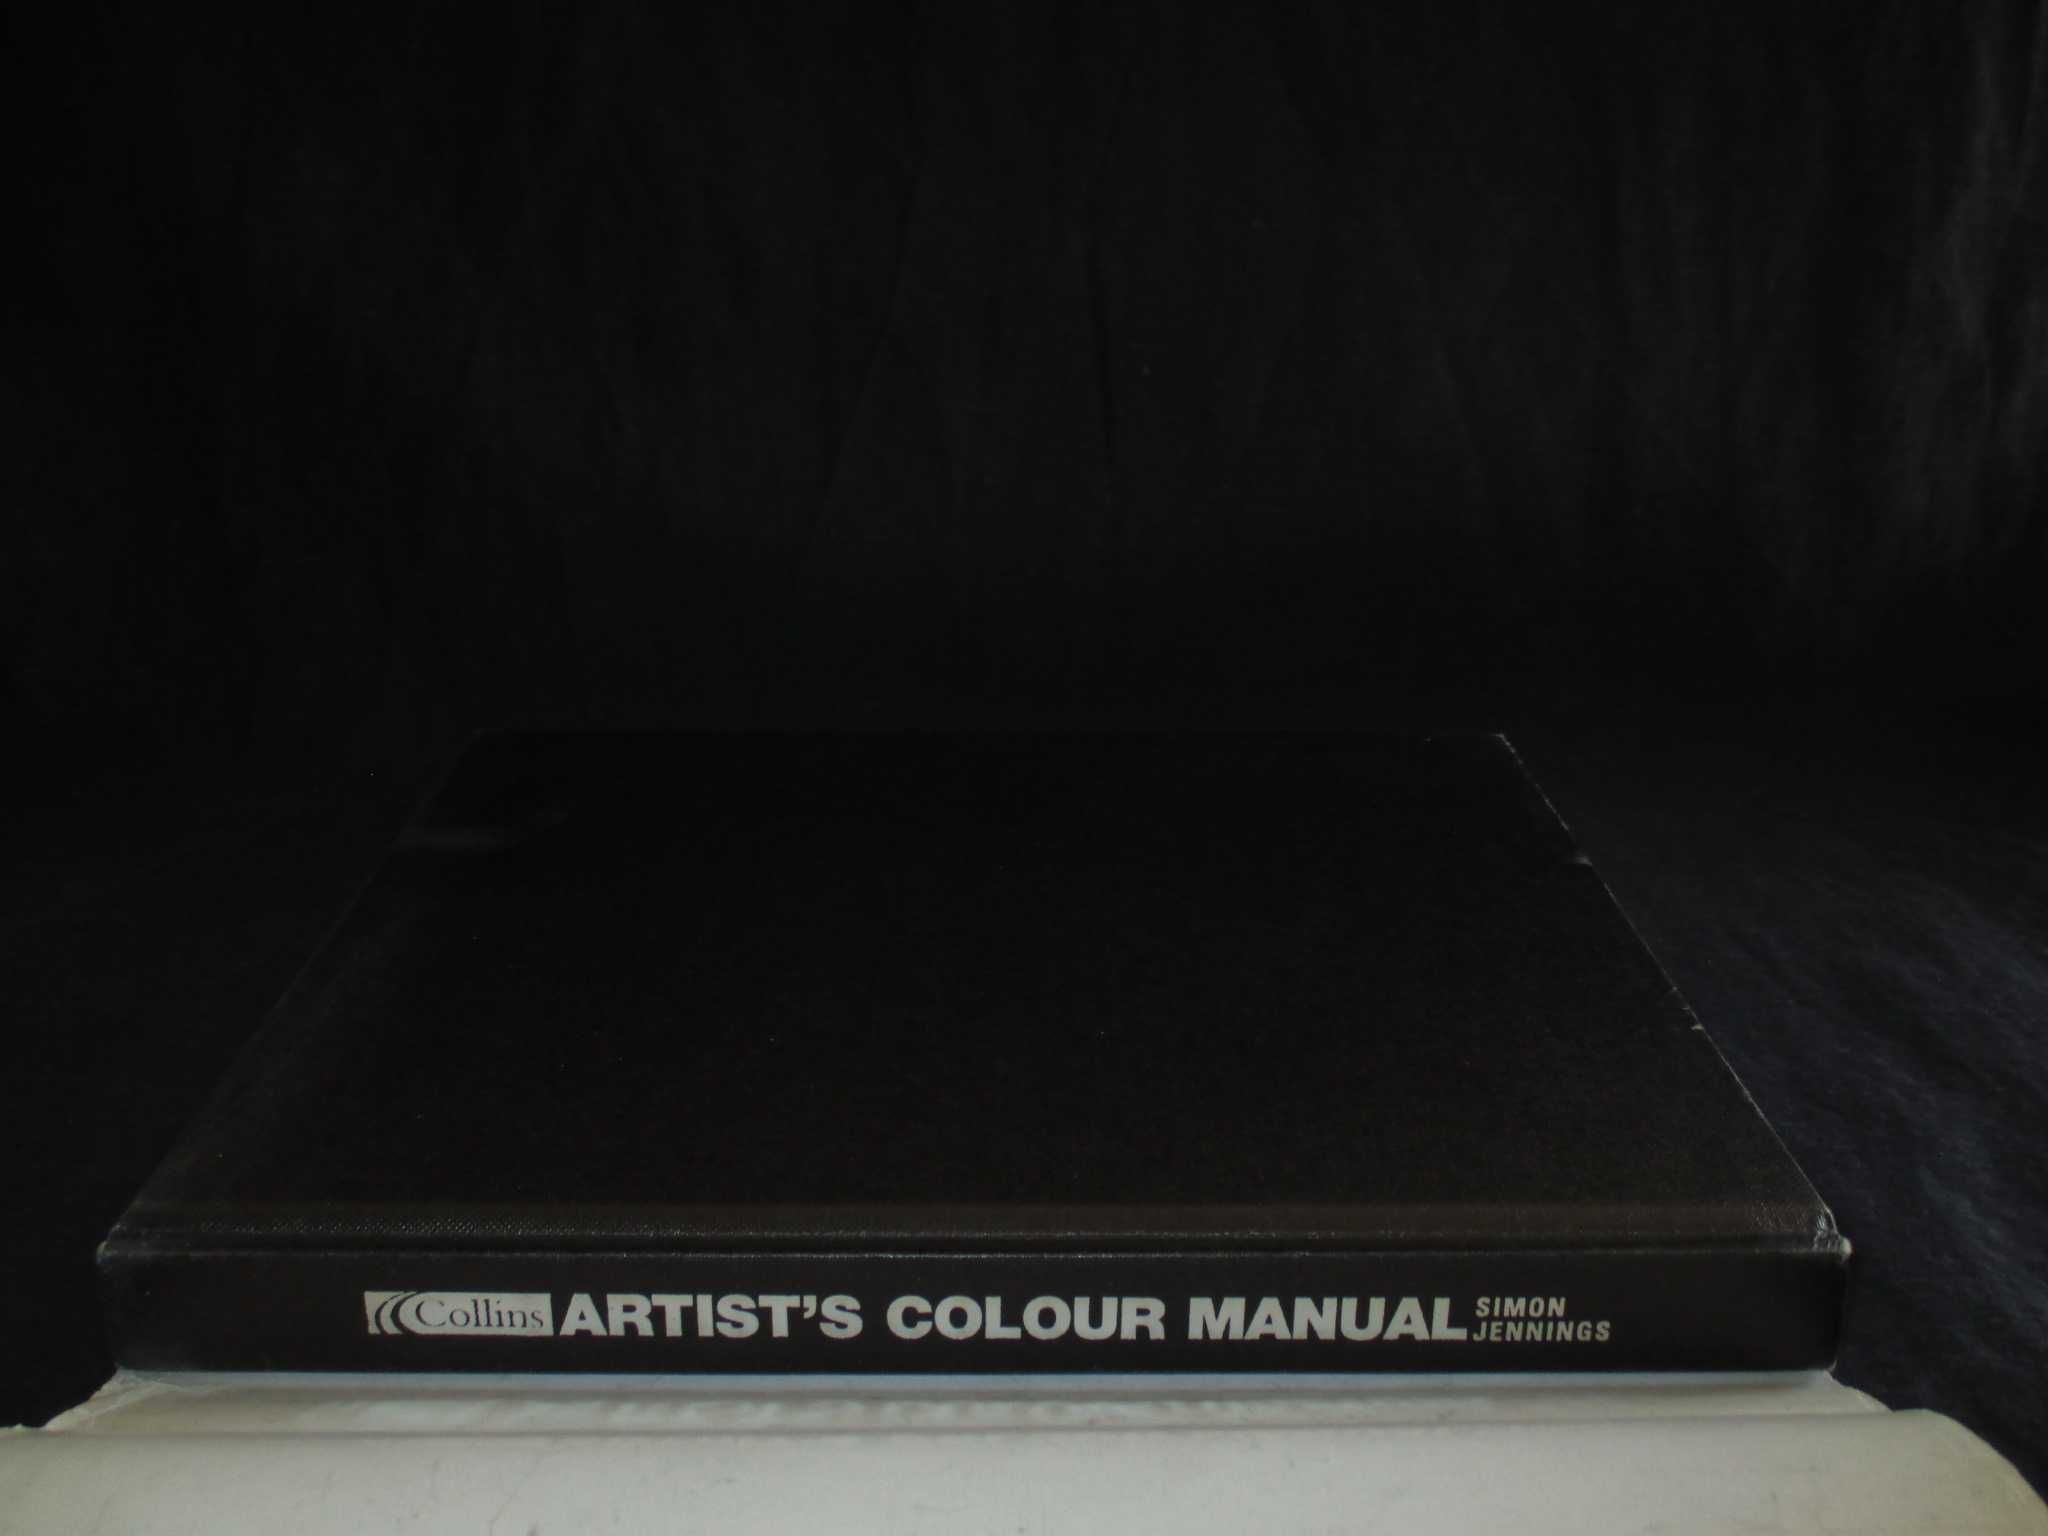 Livro Artist's Colour Manual Simon Jennings